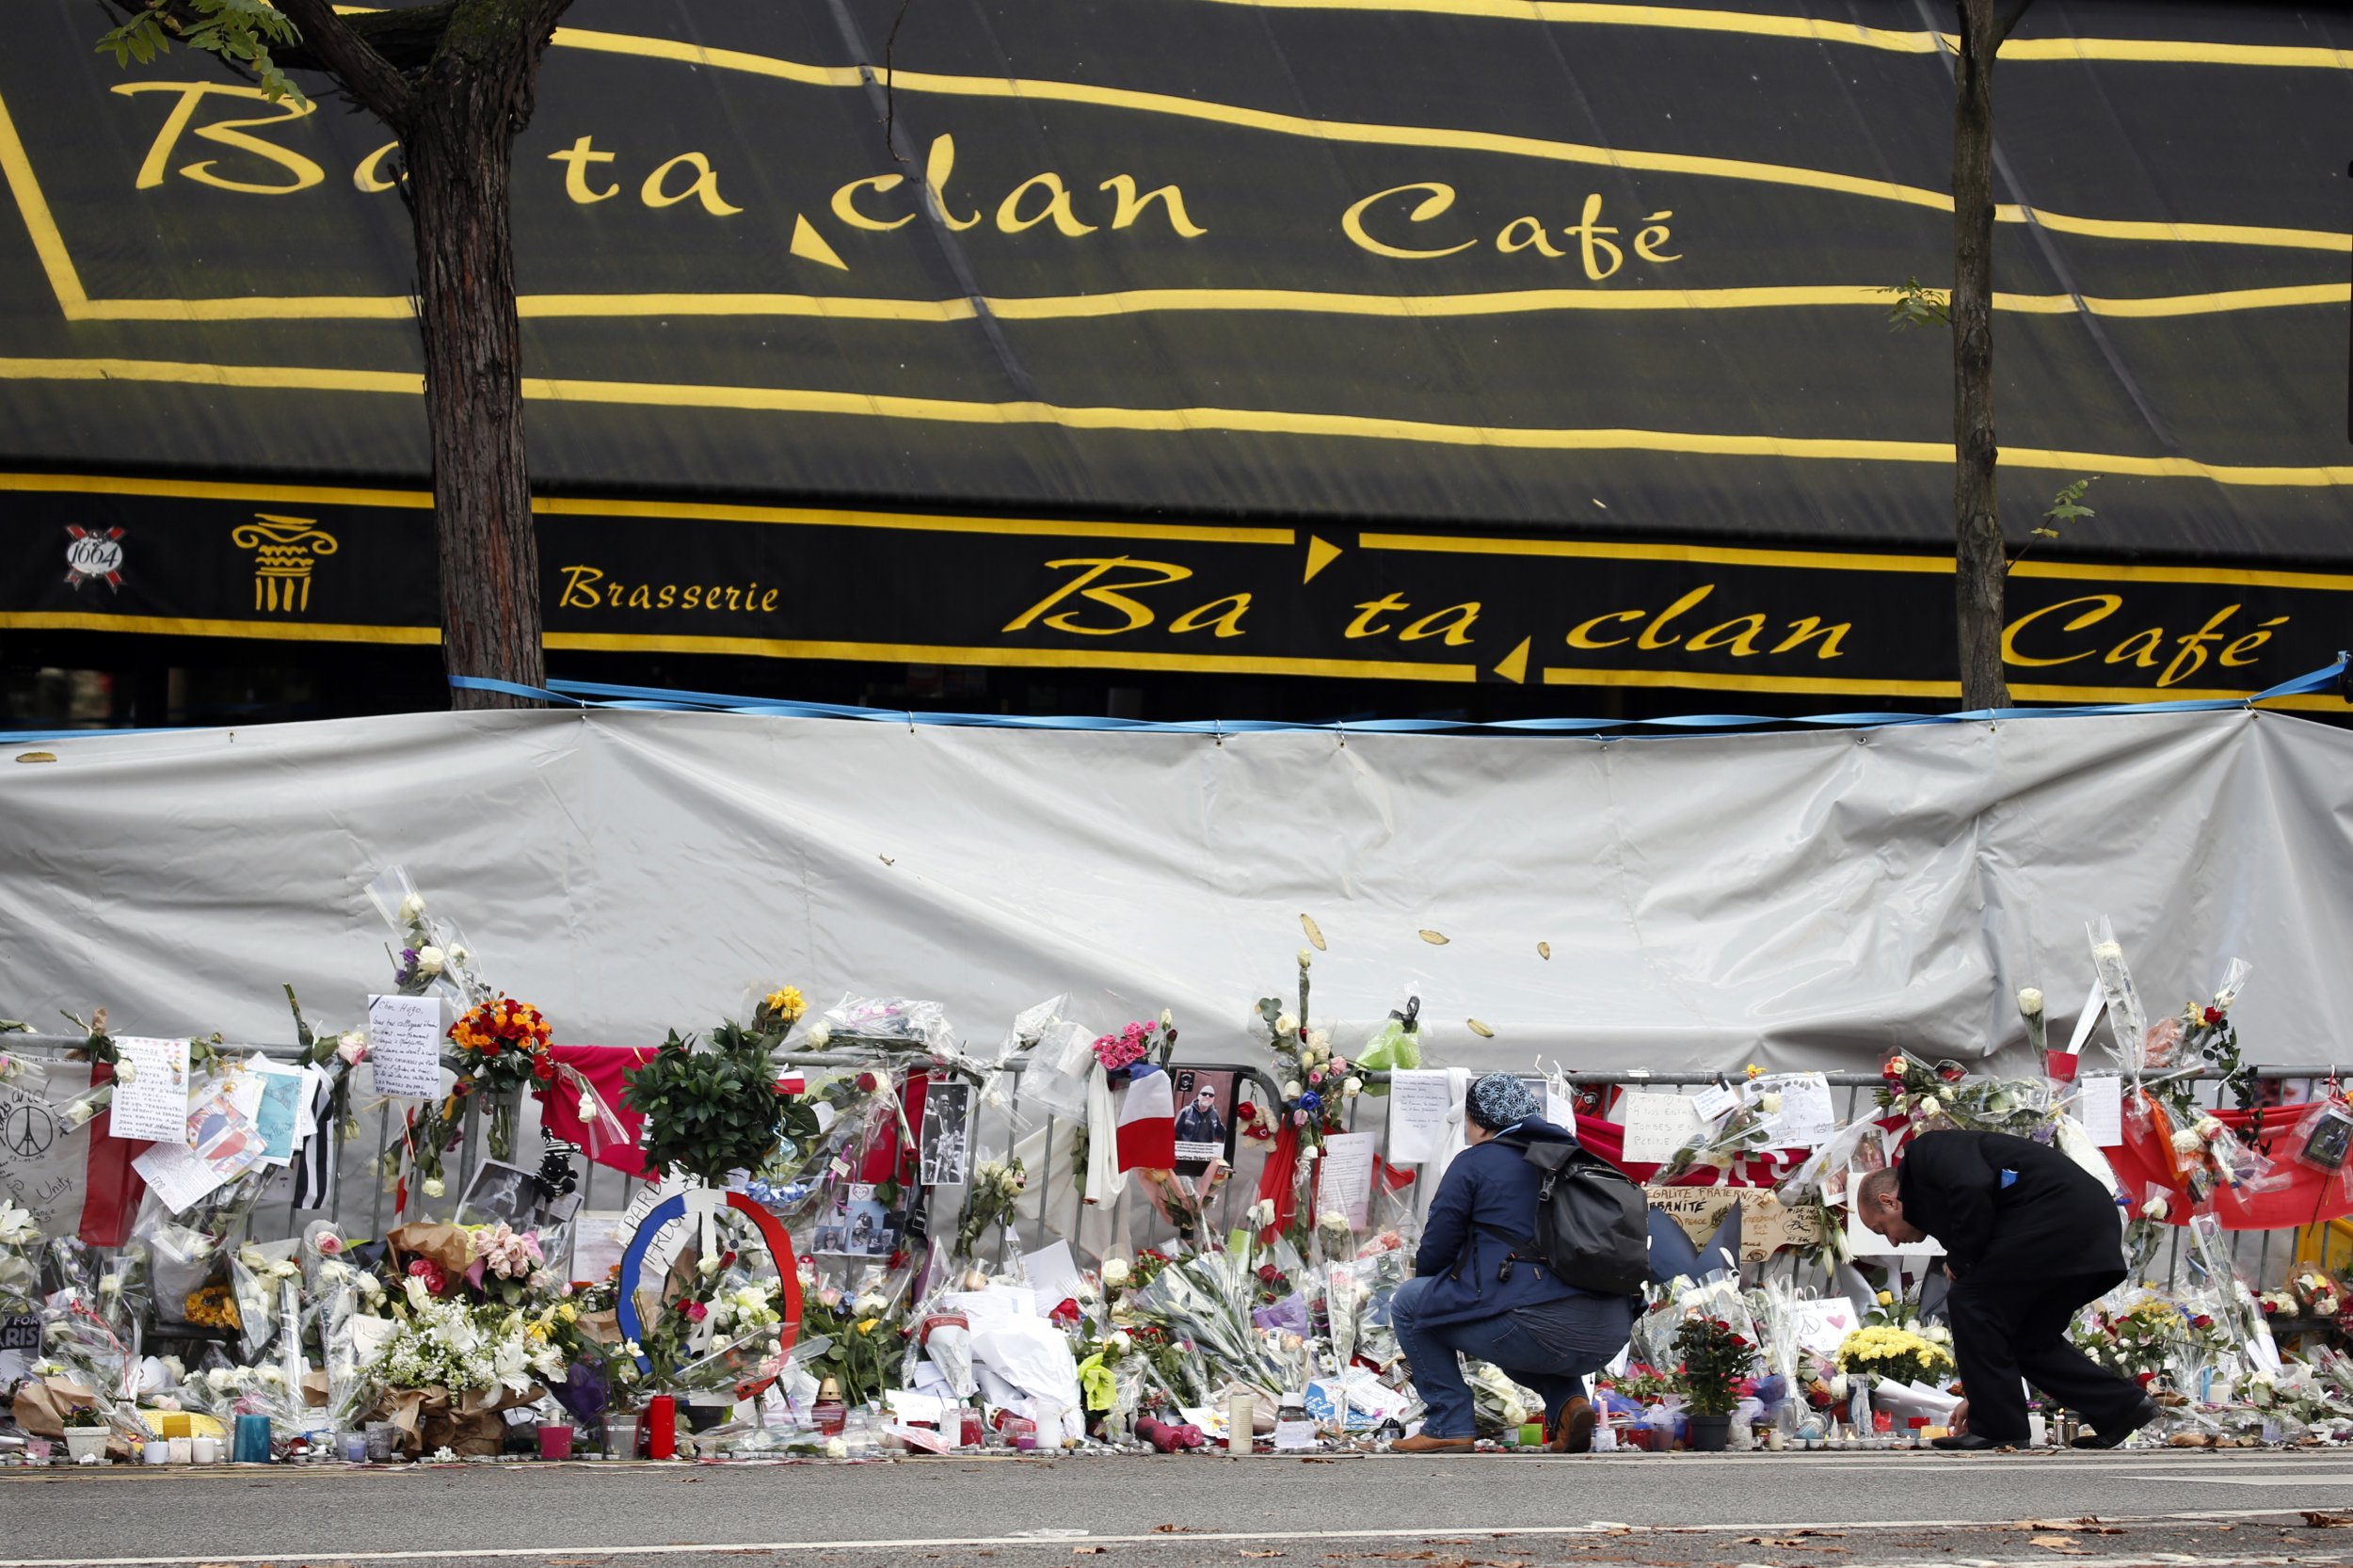 Нападение на концертный зал. Театр Батаклан в Париже 2015. 13 Ноября 2015 Франция теракт Bataclan.